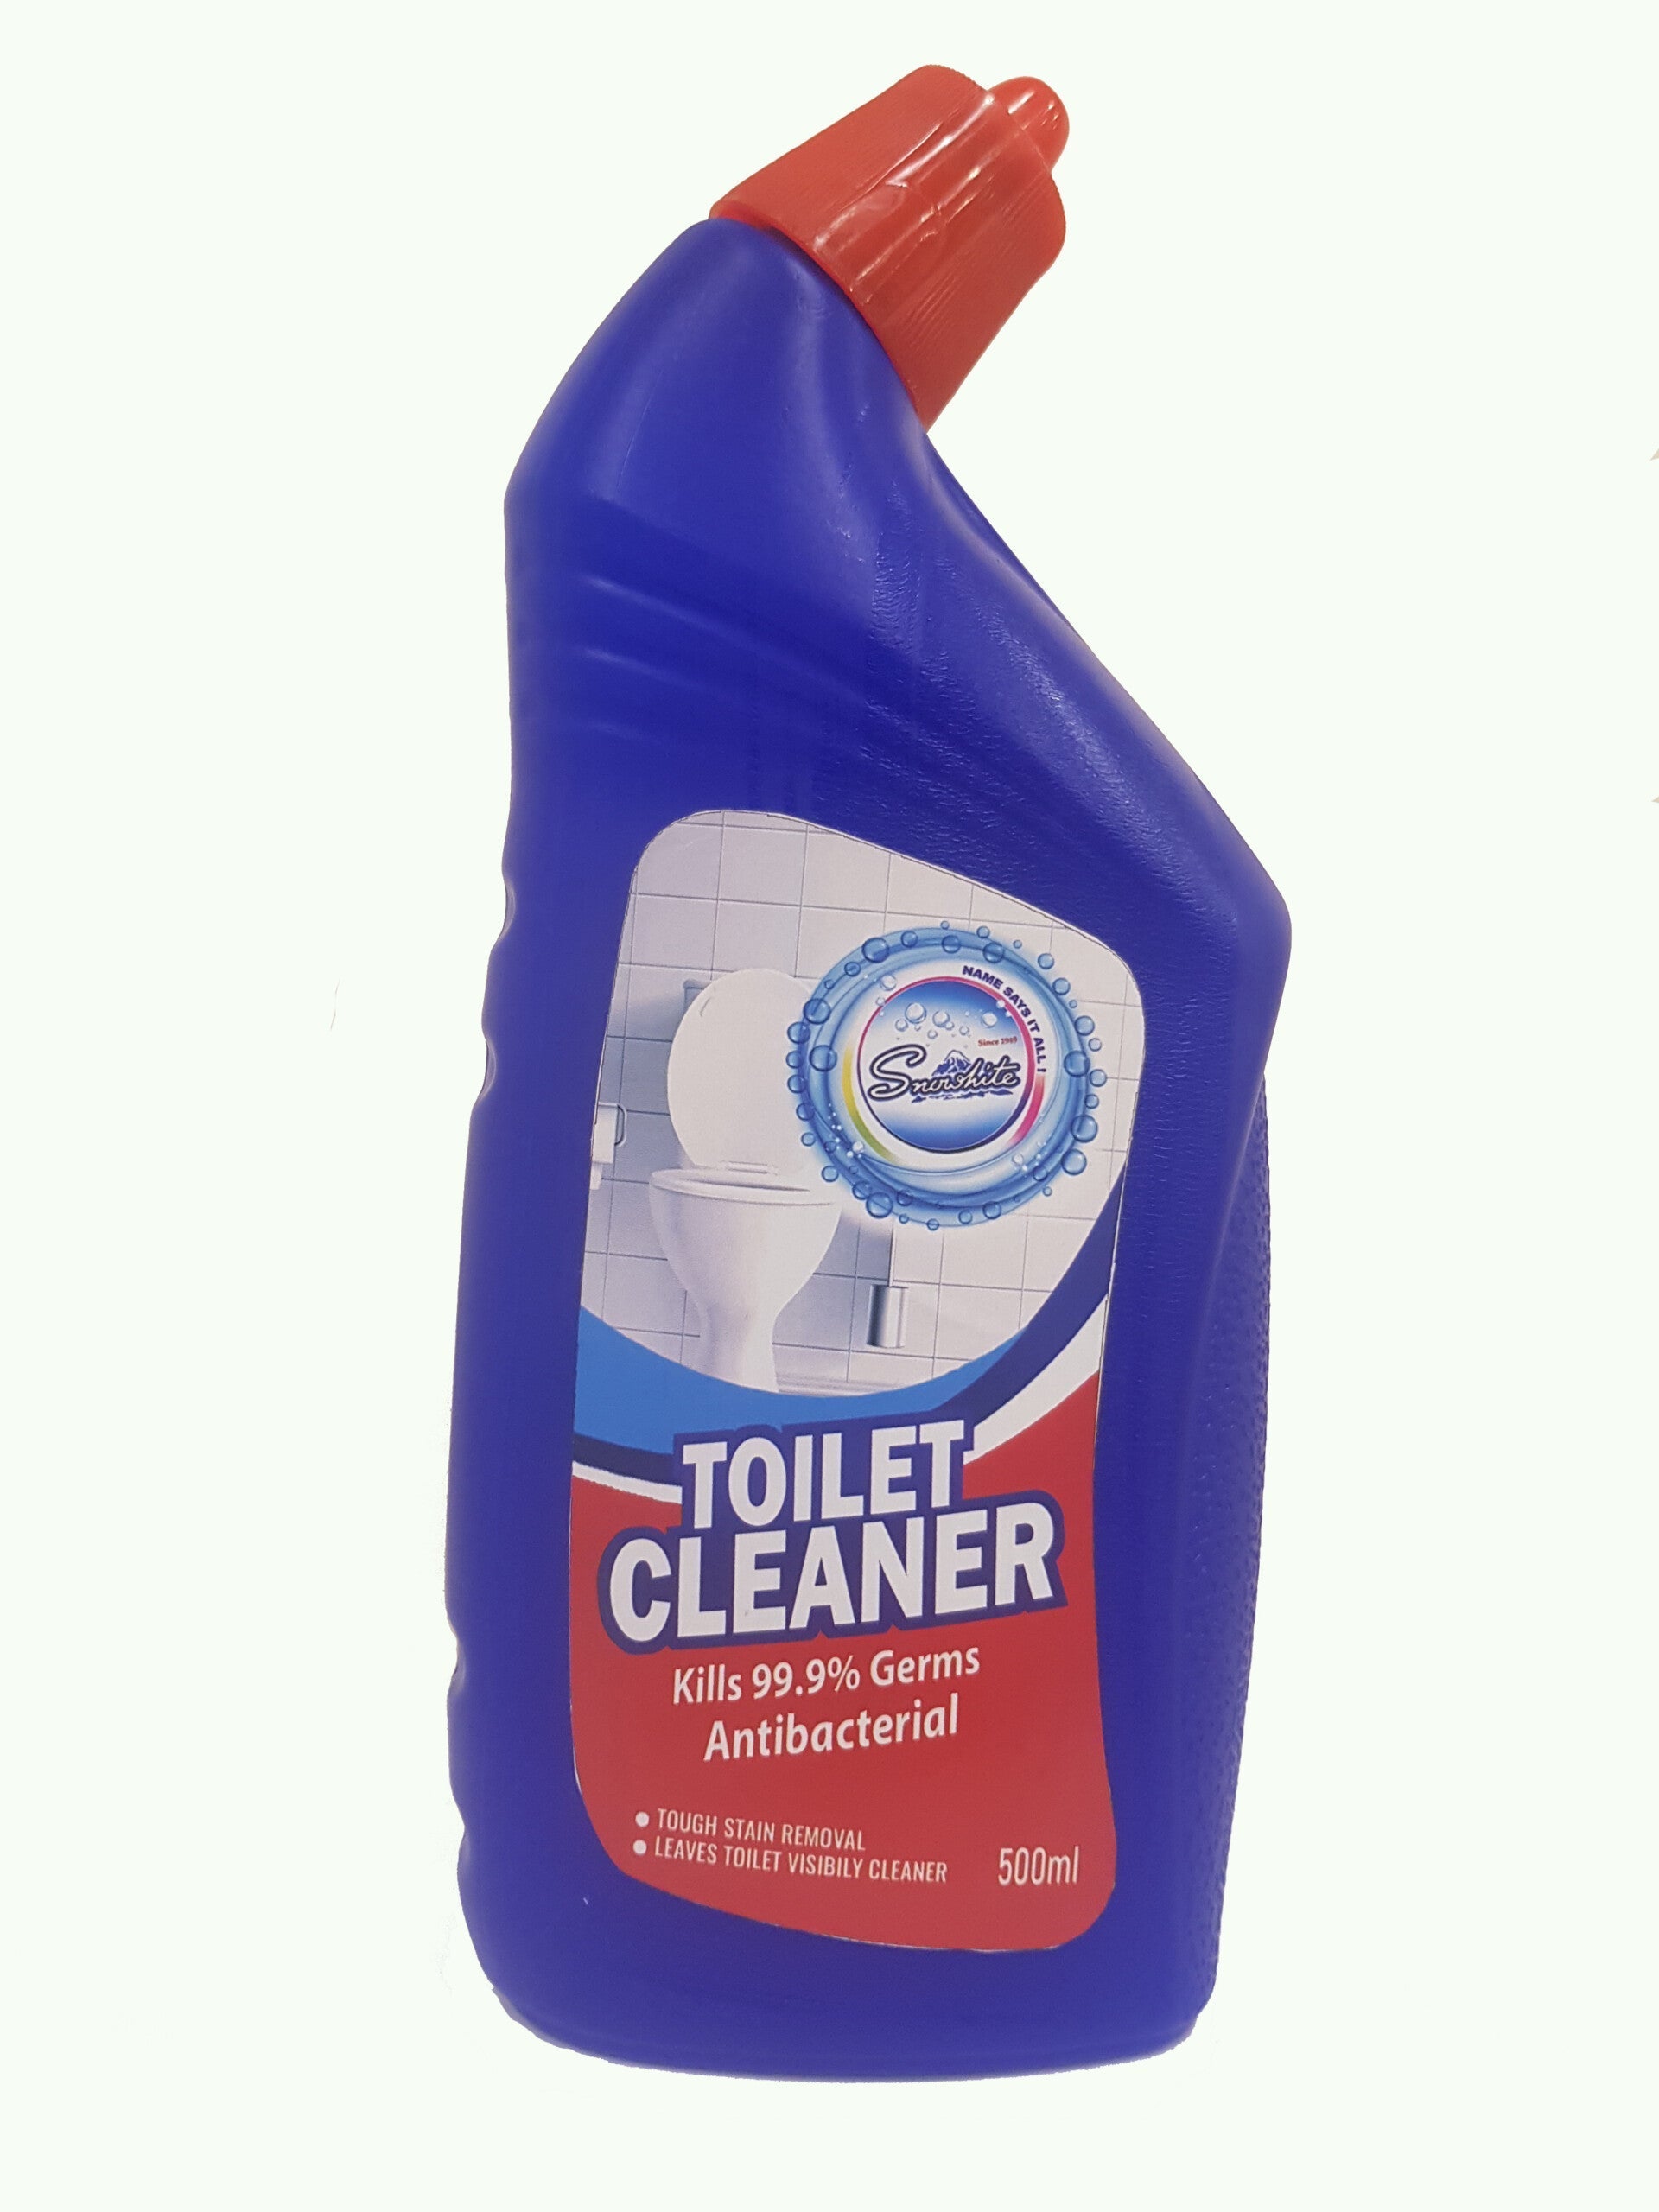 Buy 1  Toilet Cleaner 500 ml Get 1 Bathroom Cleaner 500ml Free